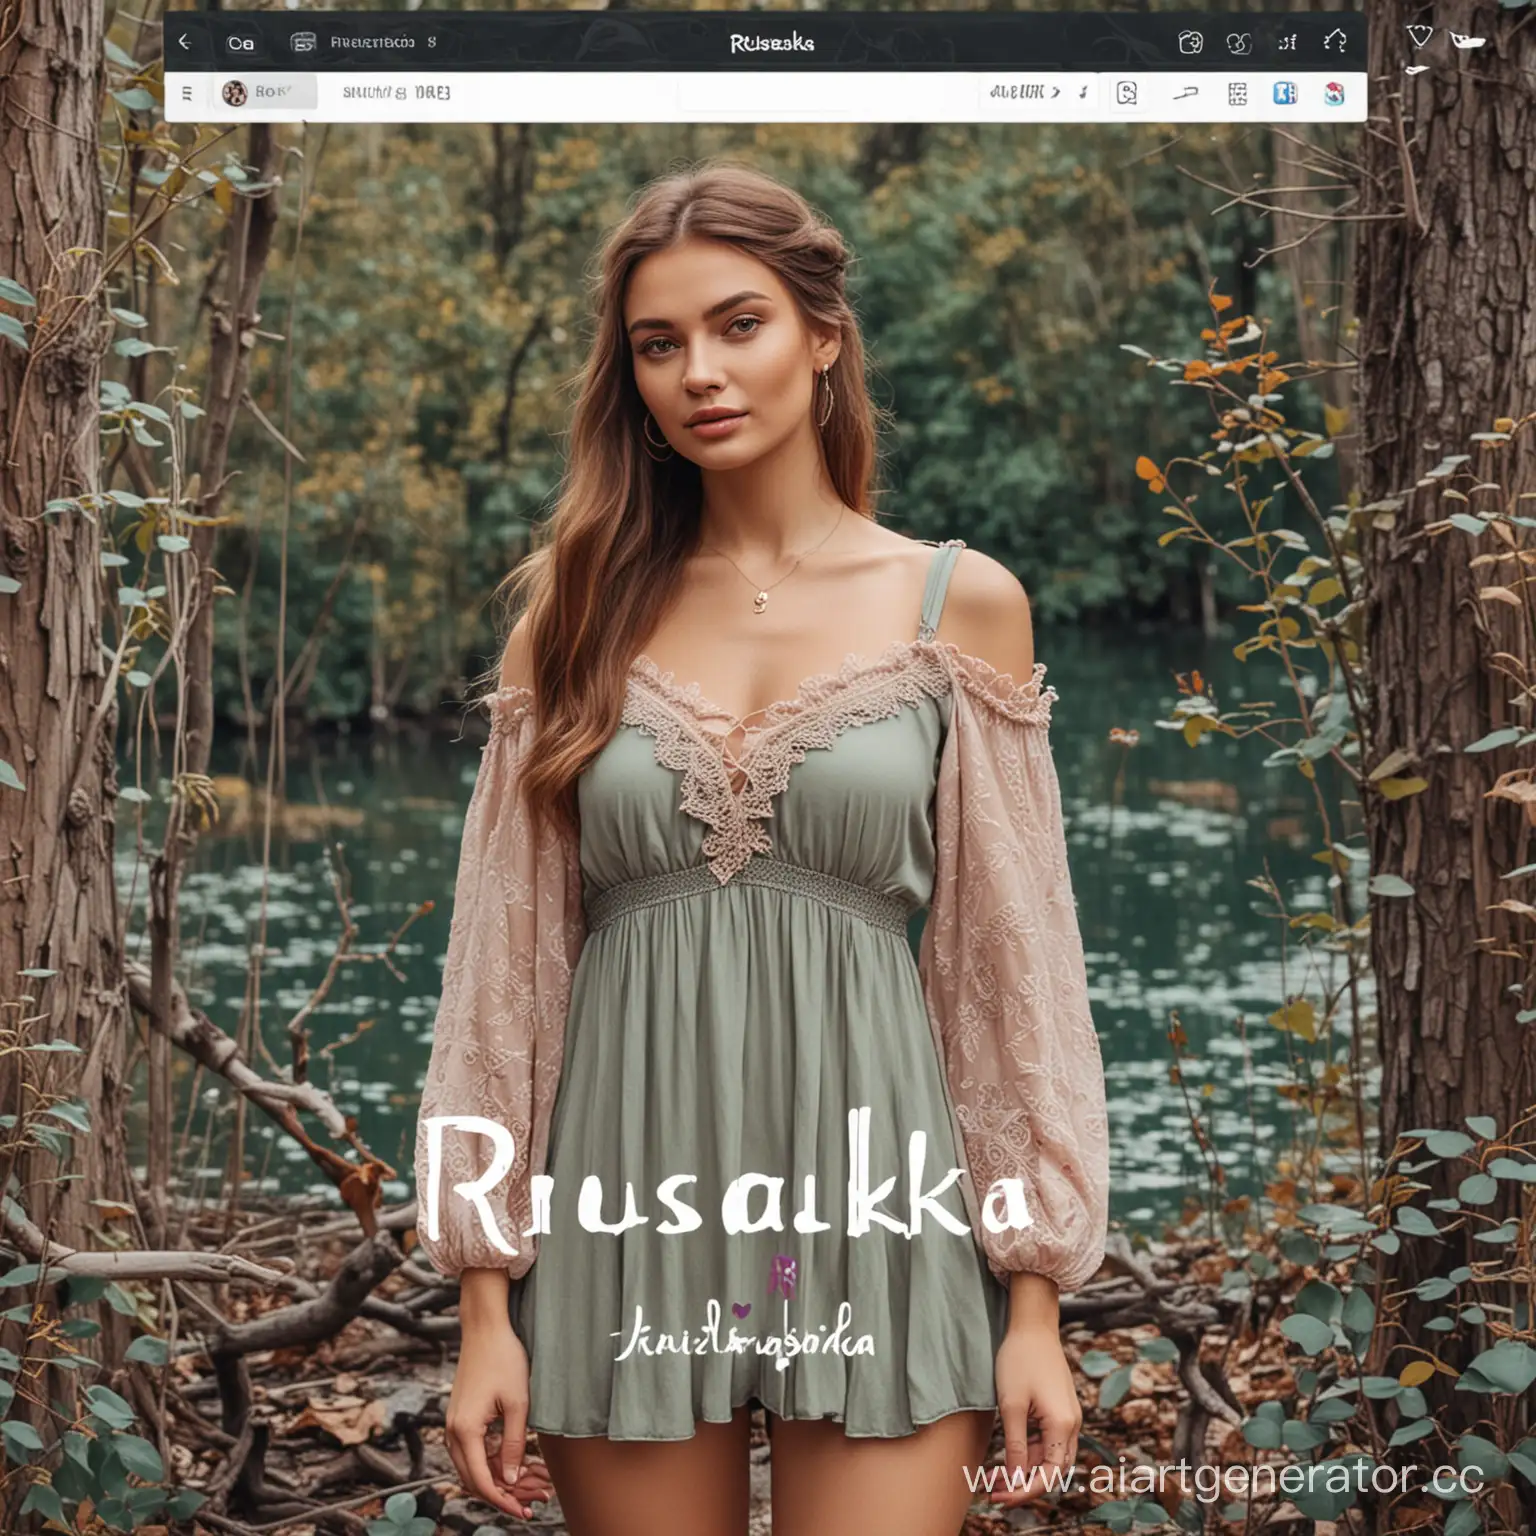 Интернет магазин женской одежды "Русалка" соц сети инстаграмм. Креативно и красиво